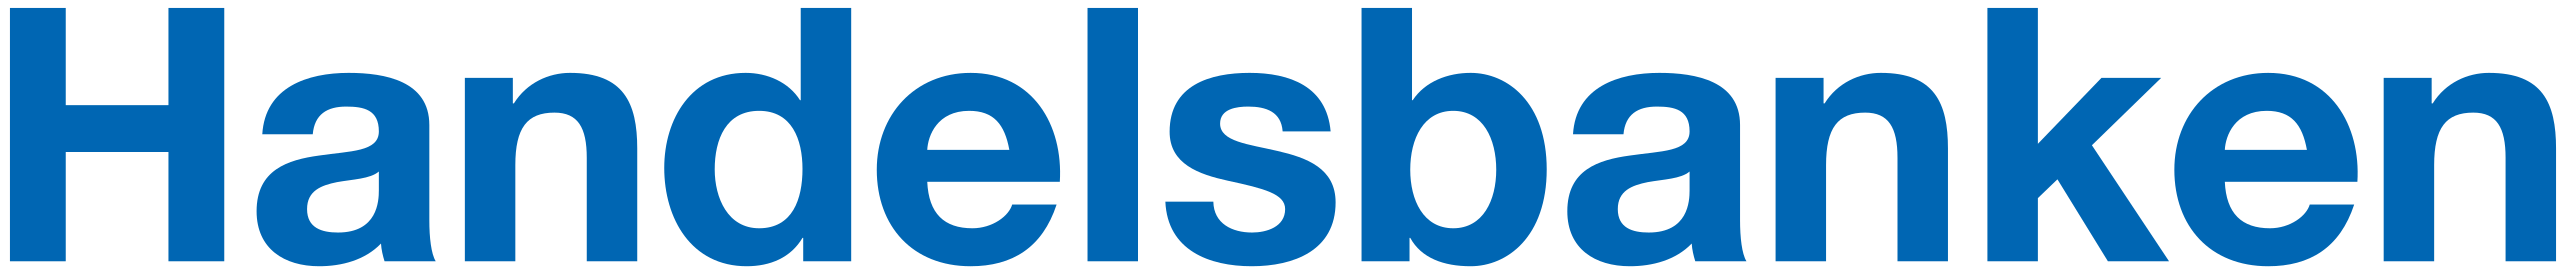 Handelsbanken logotyp